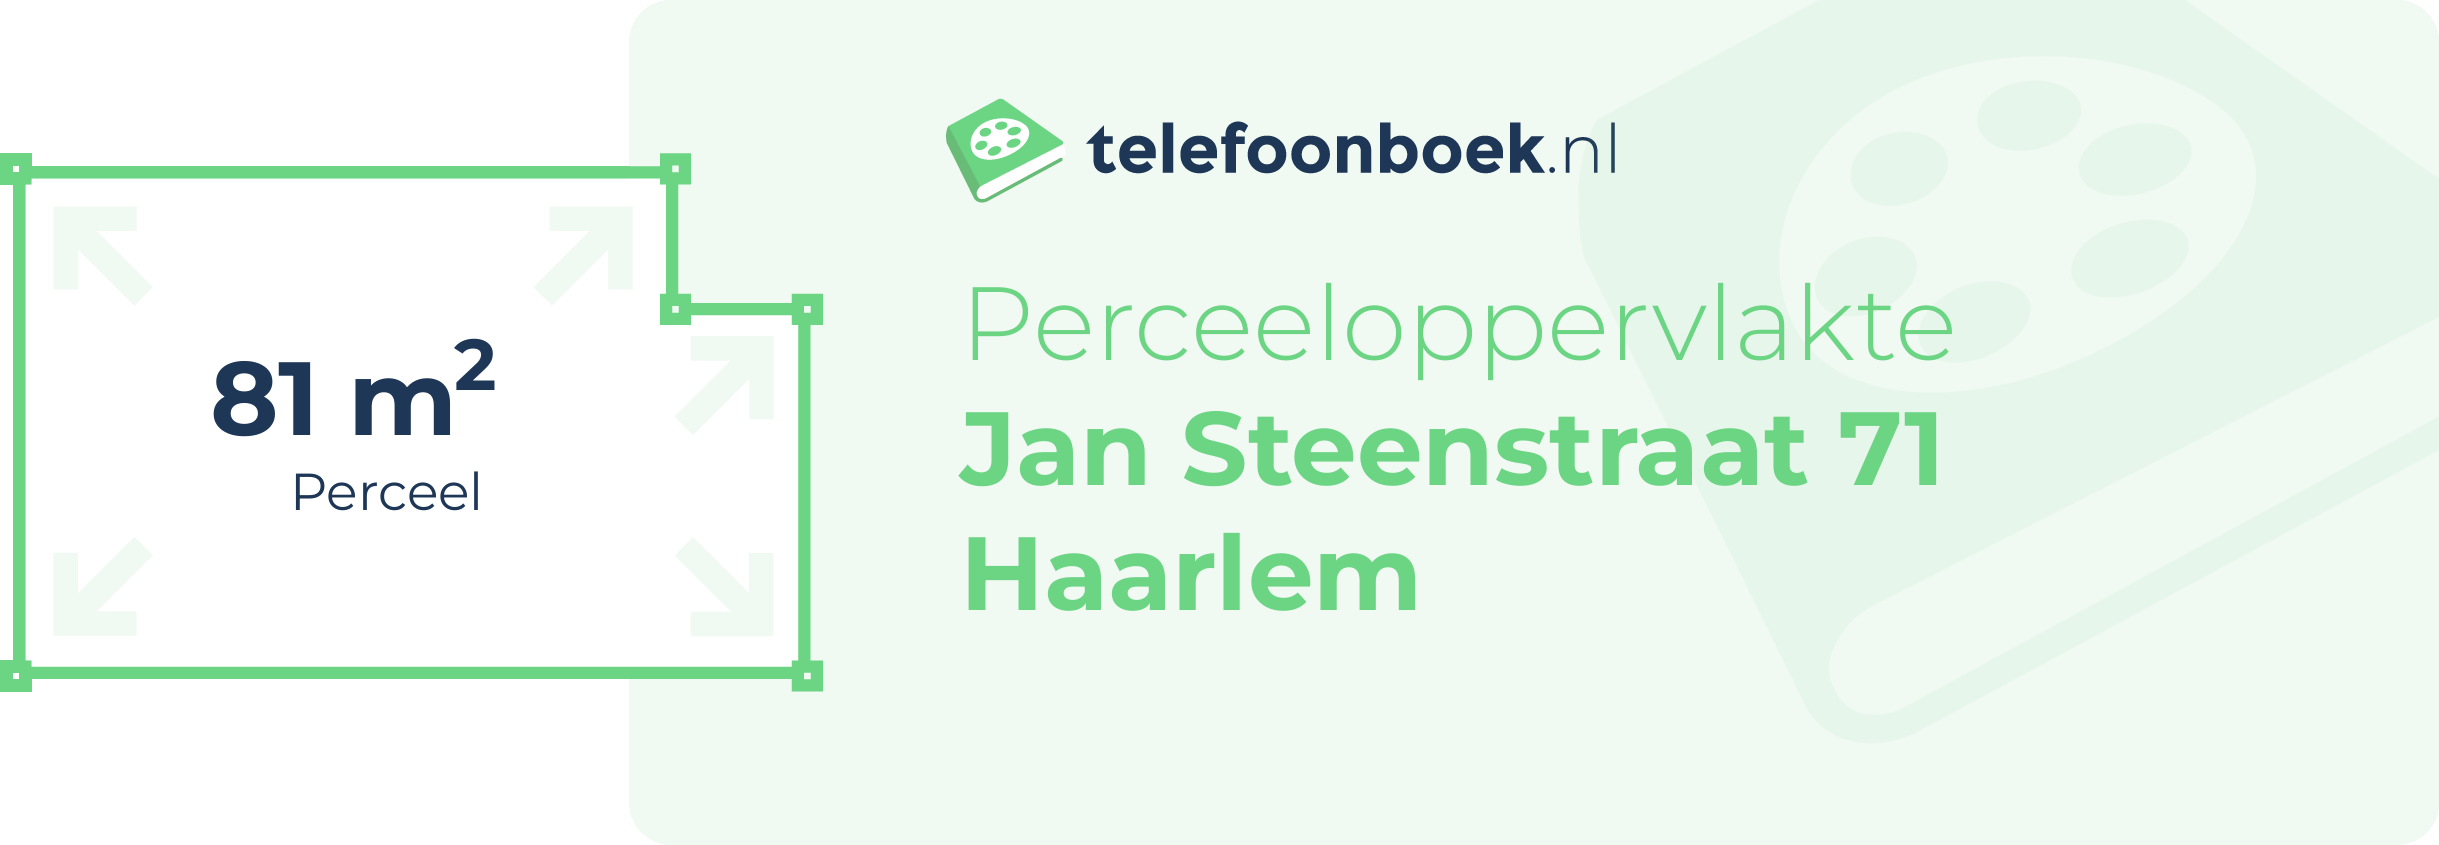 Perceeloppervlakte Jan Steenstraat 71 Haarlem